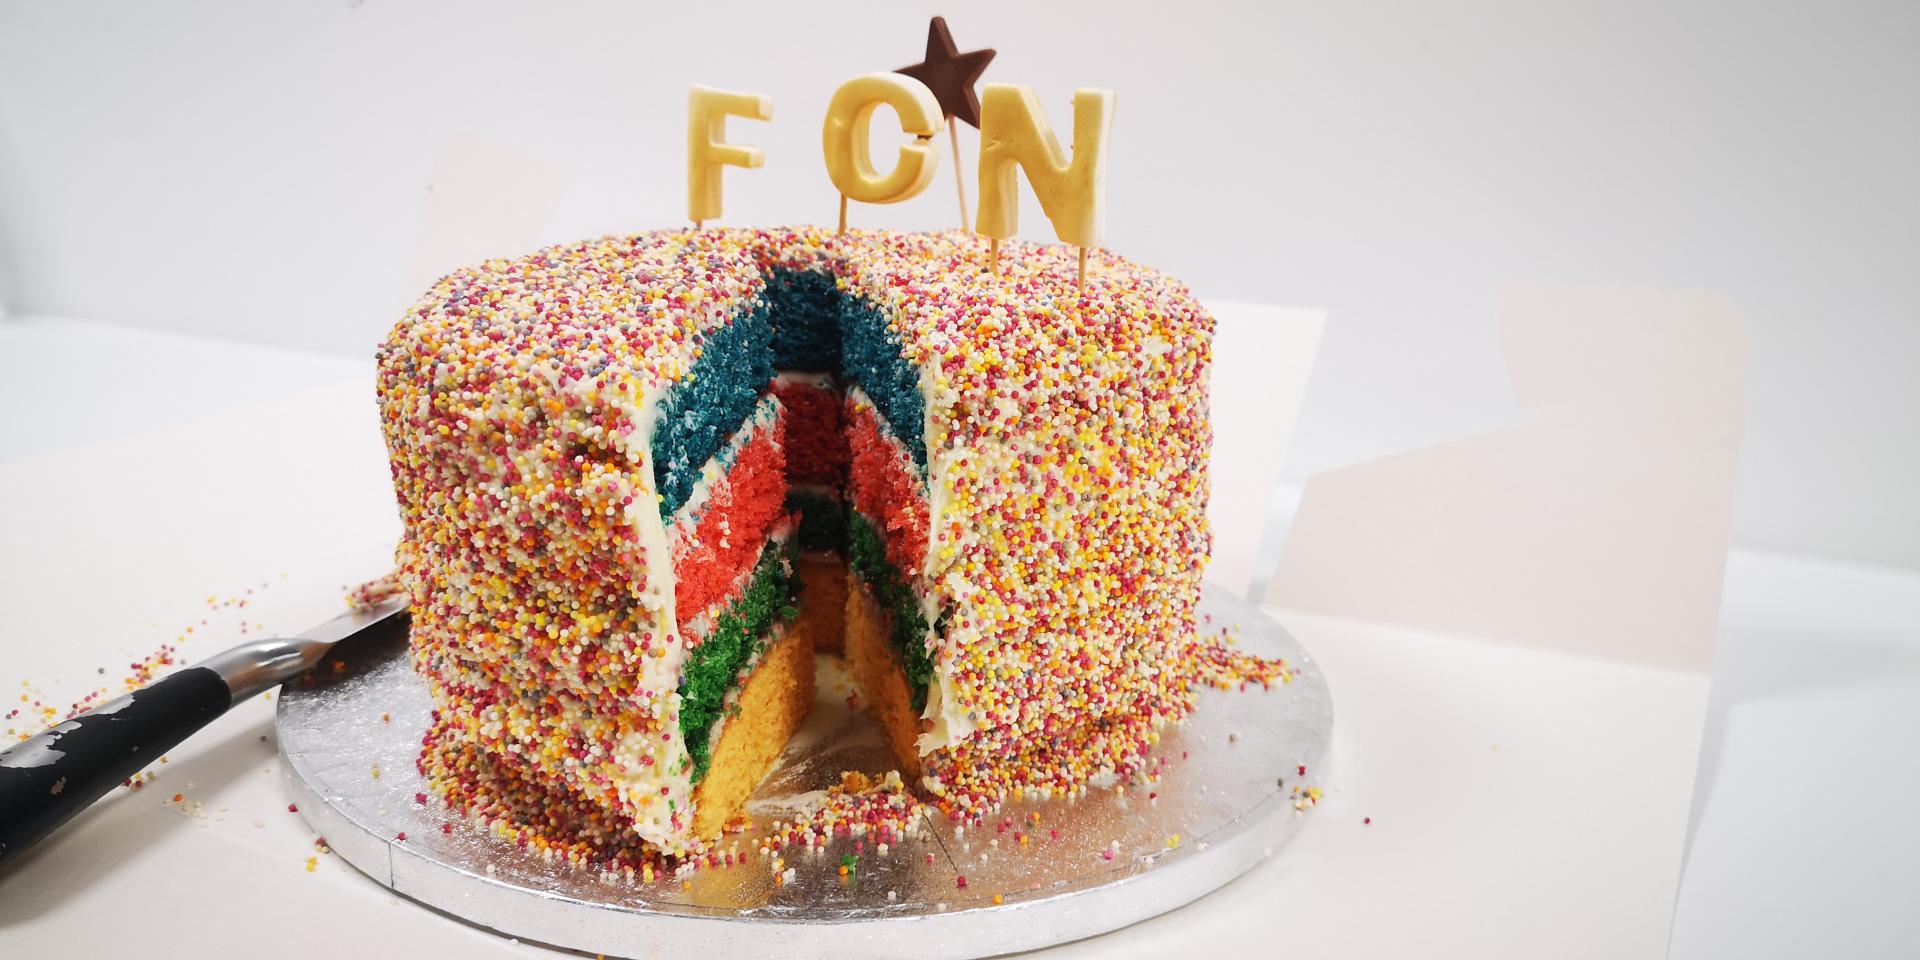 FCN cake